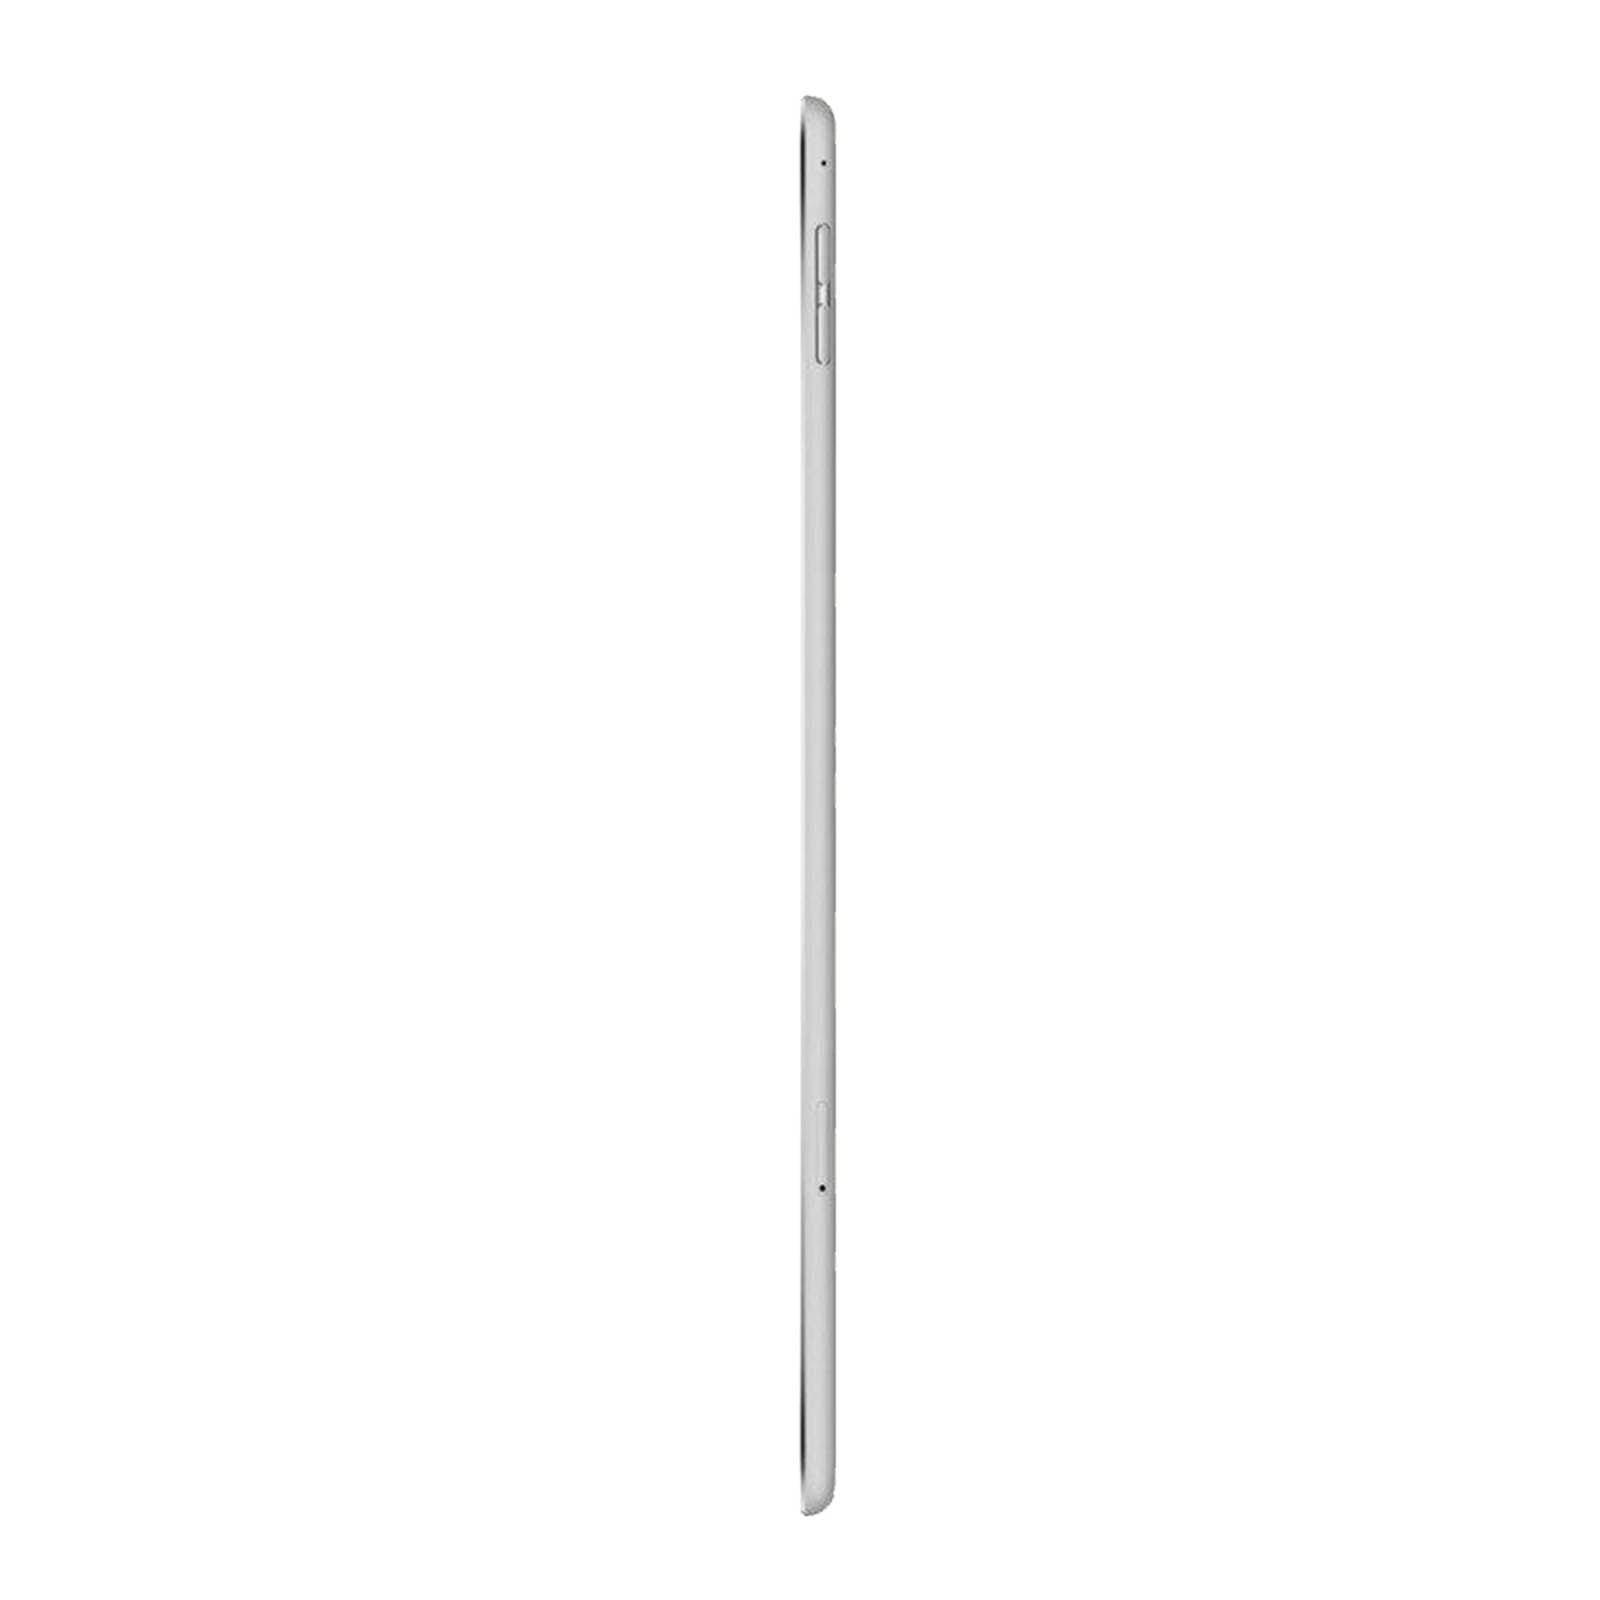 Apple iPad Air 2 16GB WiFi Silver